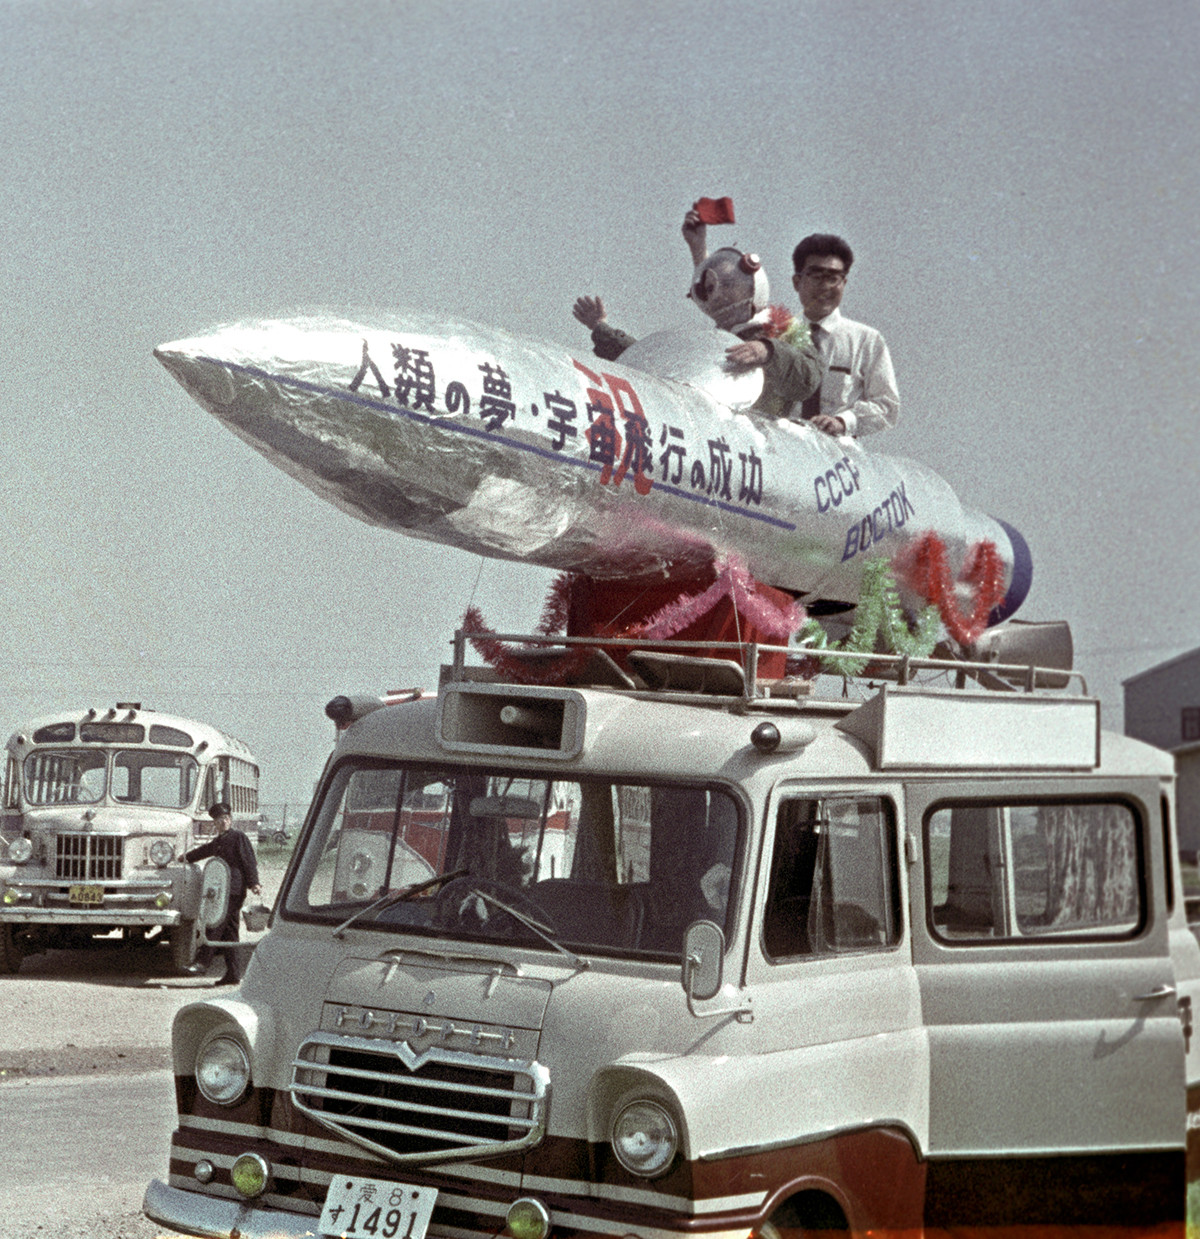 ソ連の英雄的宇宙飛行士を歓迎するために東京の住民が作った宇宙ロケットの模型